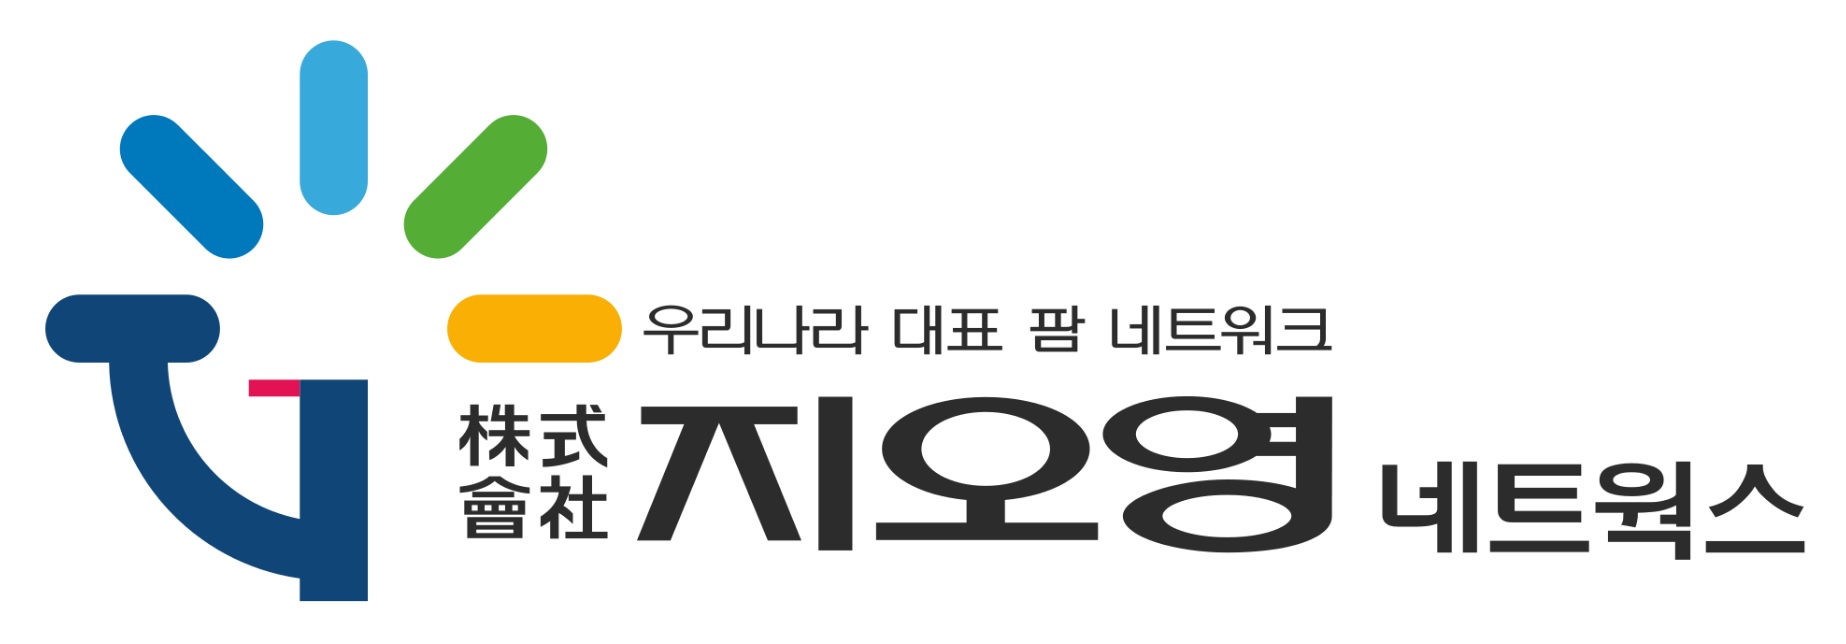 조선혜지와이홀딩스의 계열사 (주)지오영네트웍스의 로고